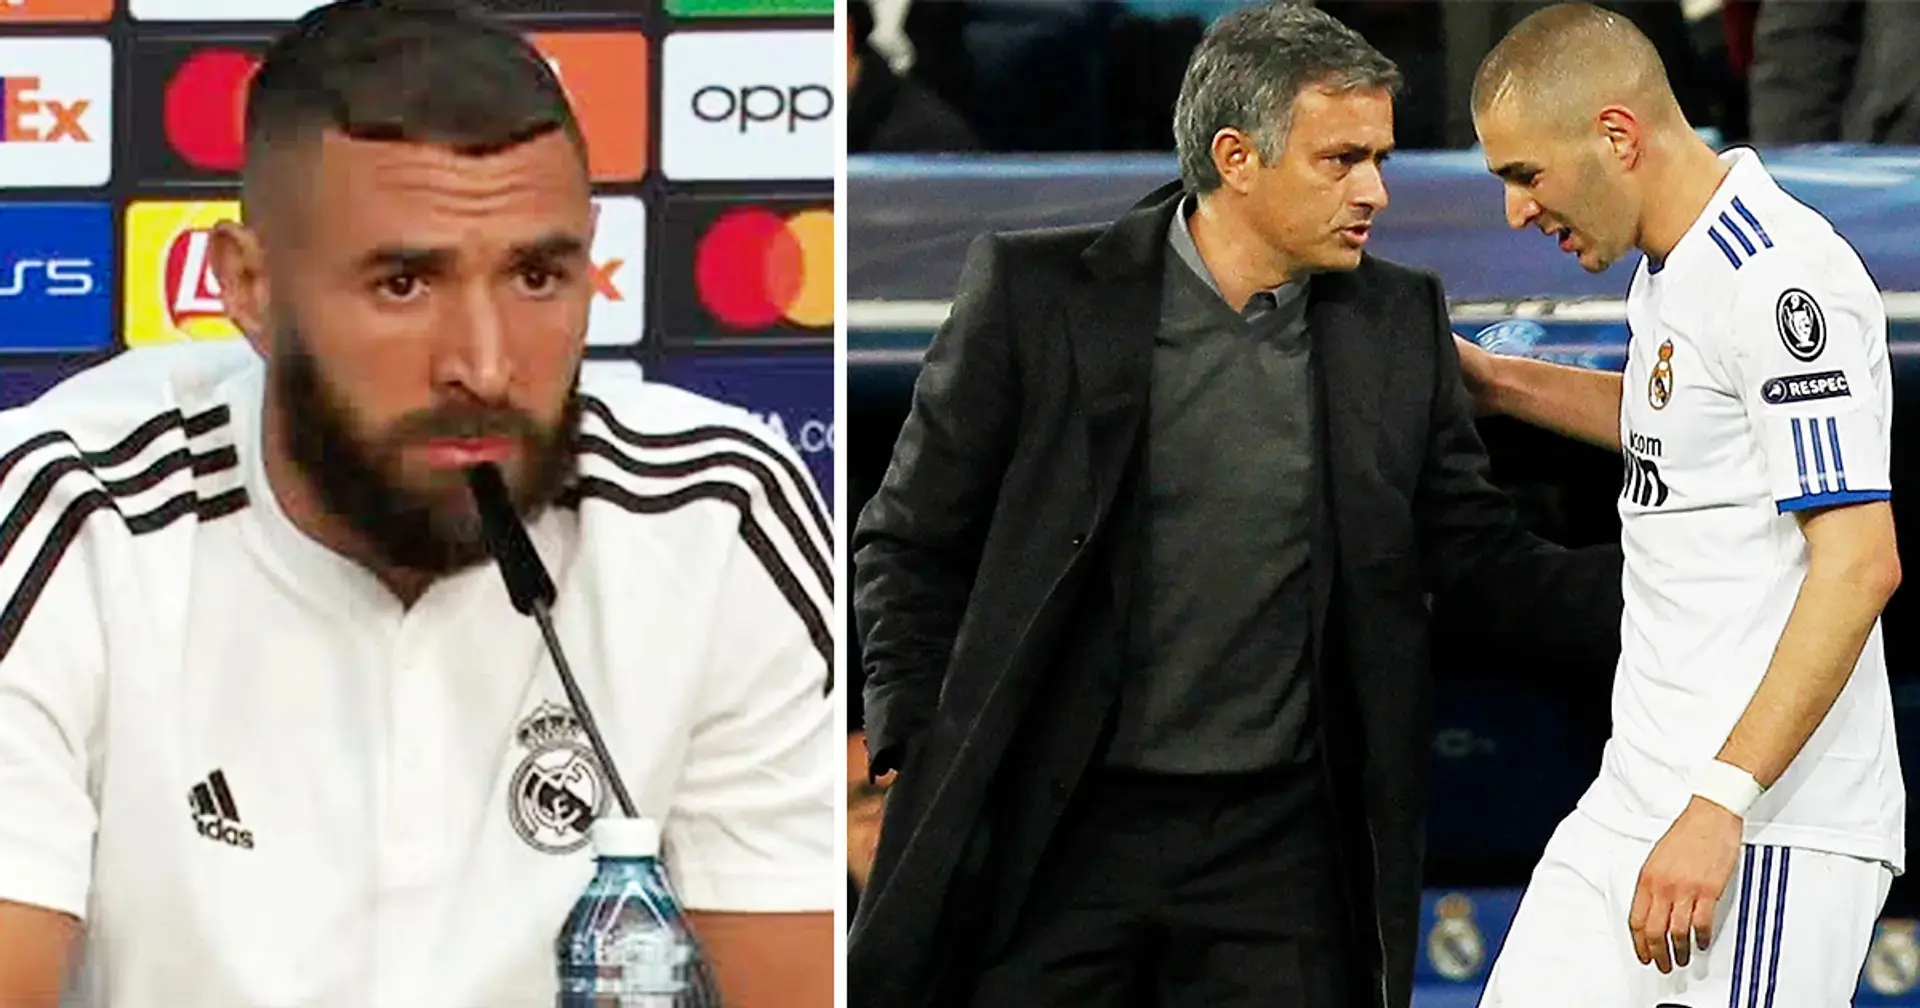 'Le perdí el respeto a Mourinho cuando me llamó gato': Benzema revela detalles del extraño encuentro con José Mourinho 